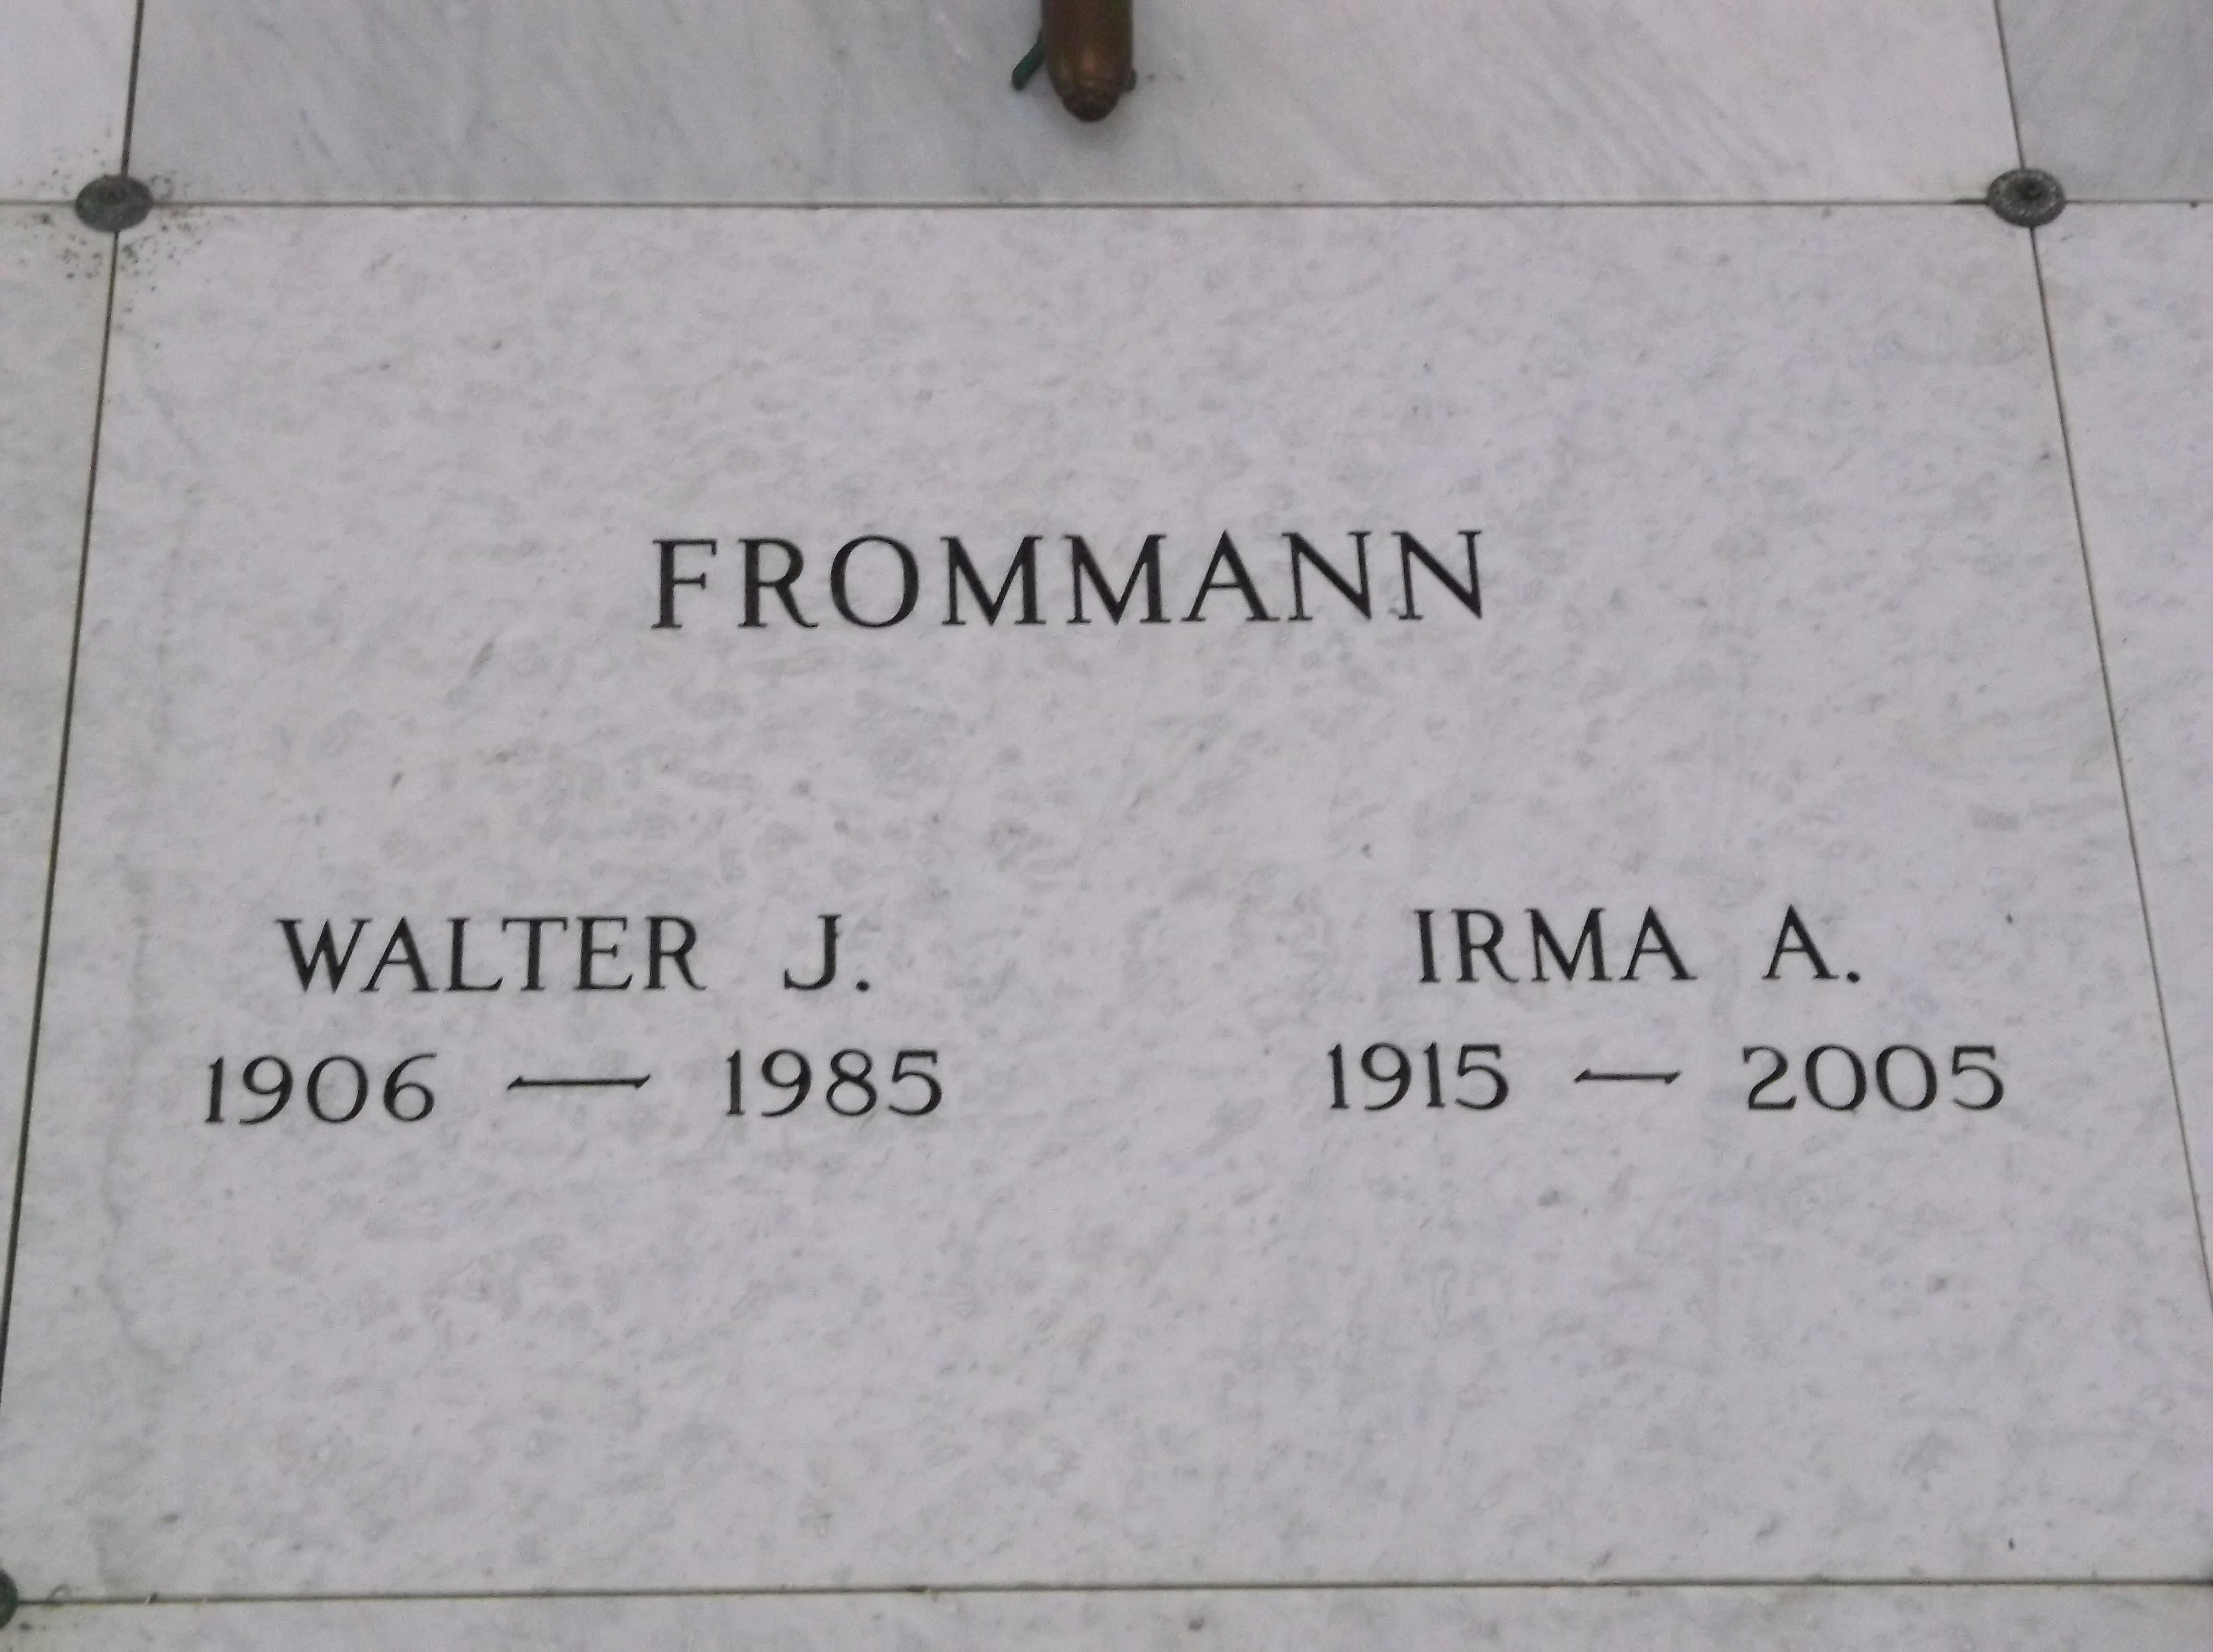 Walter J Frommann